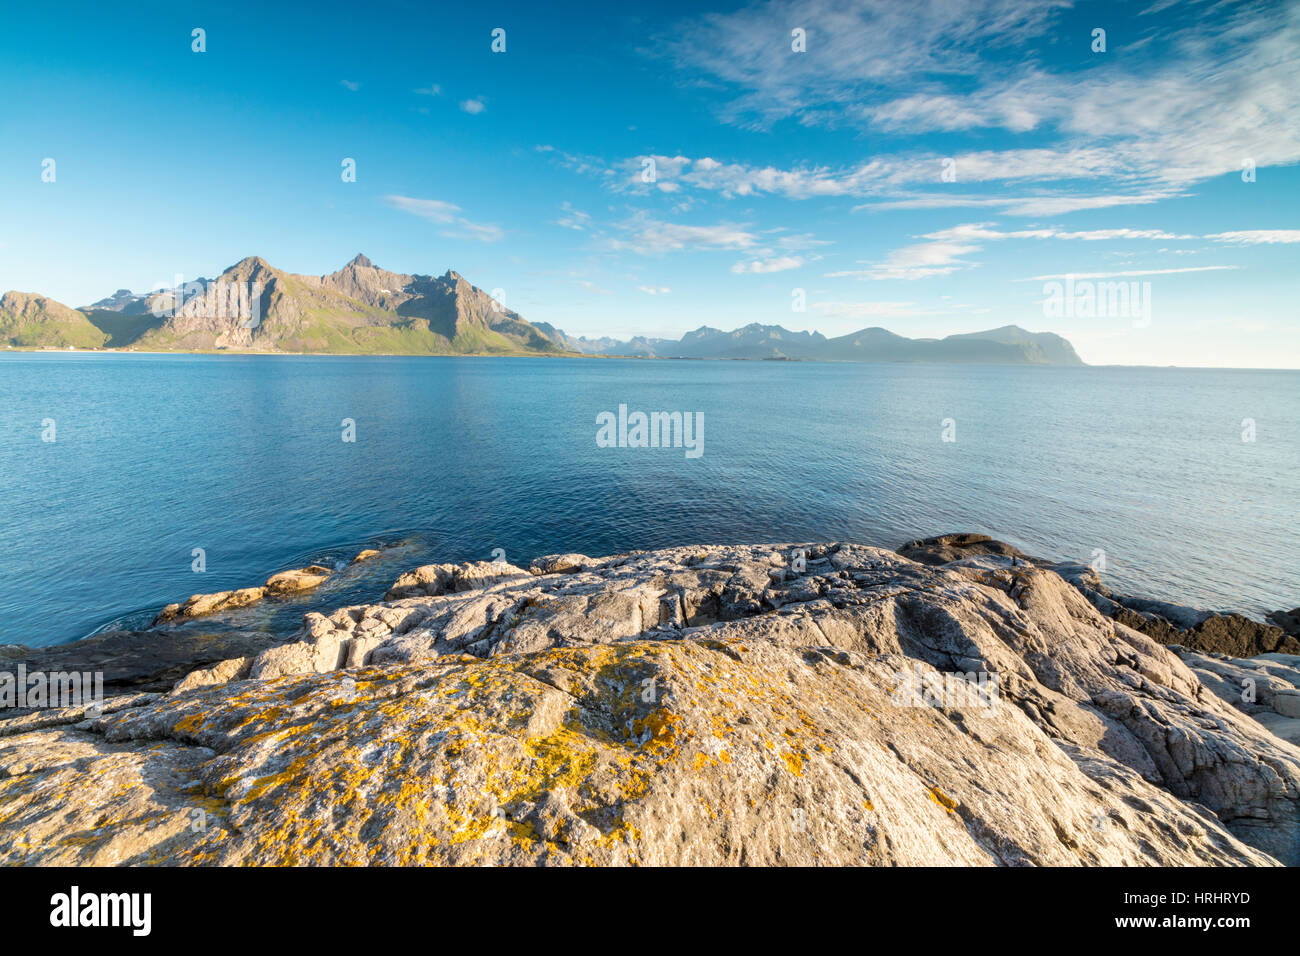 Le soleil brille sur la mer bleue et les pics rocheux de nuit en été, Vikten, Nord Nord-trondelag, Lofoten, Norvège, Scandinavie Banque D'Images